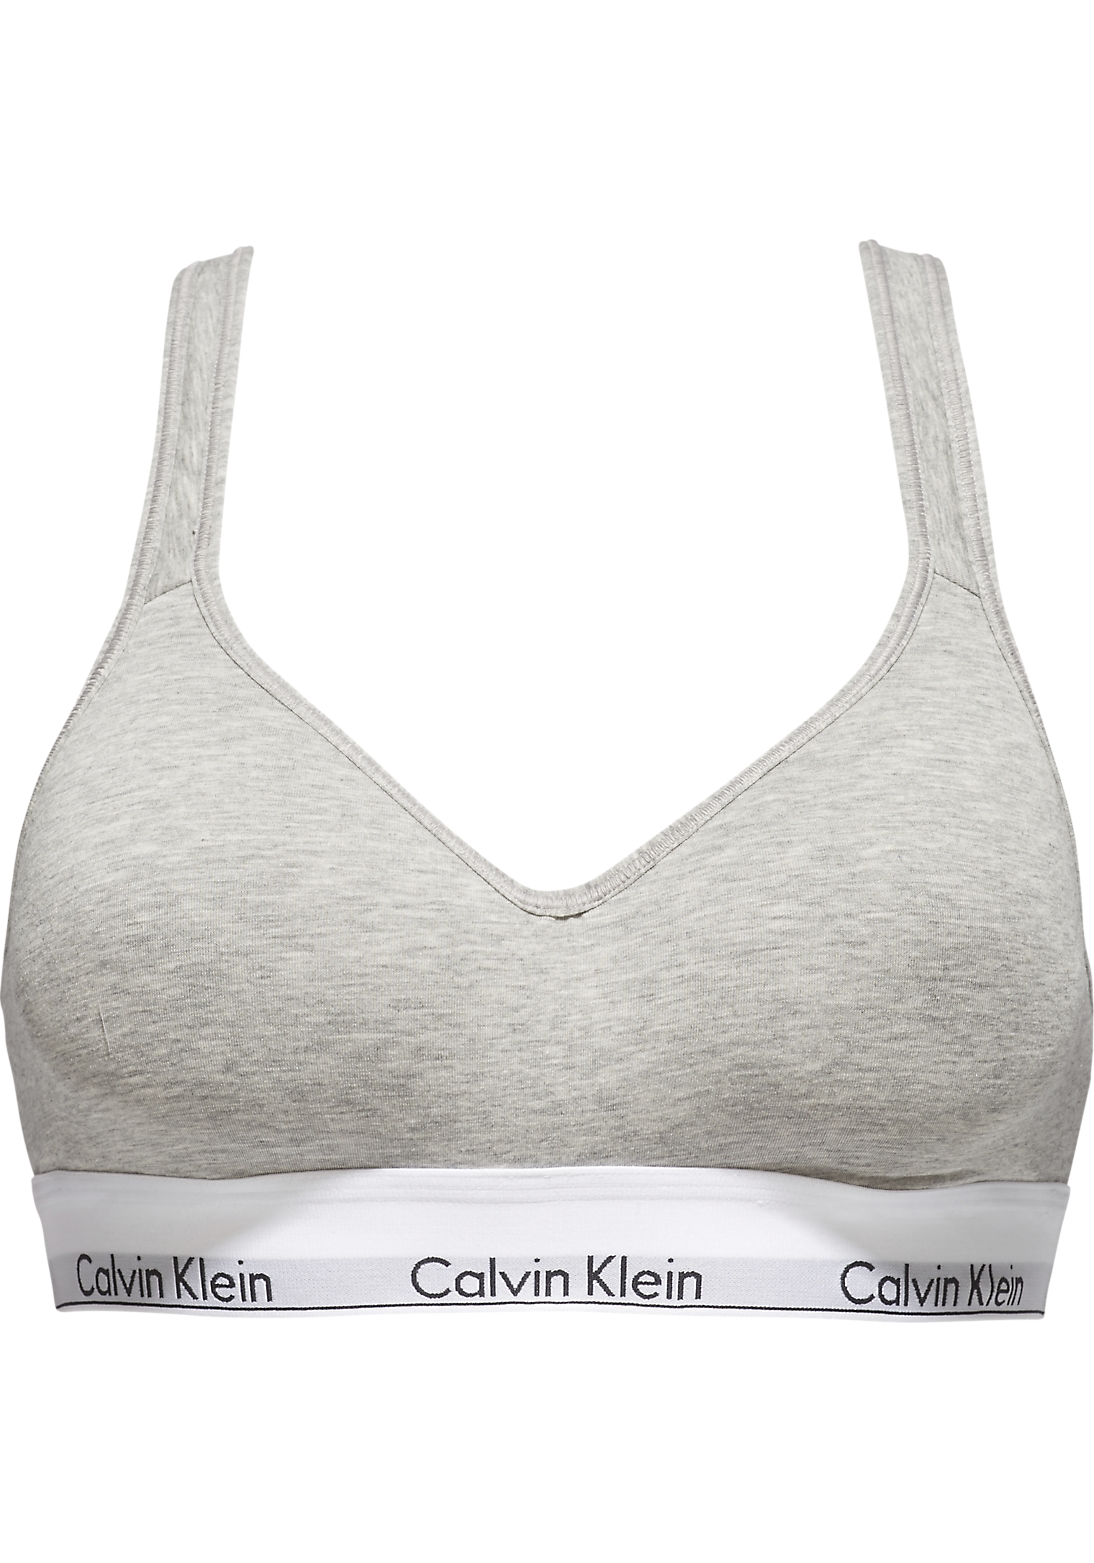 Calvin Klein dames Modern Cotton bralette top, met voorgevormde cups, grijs